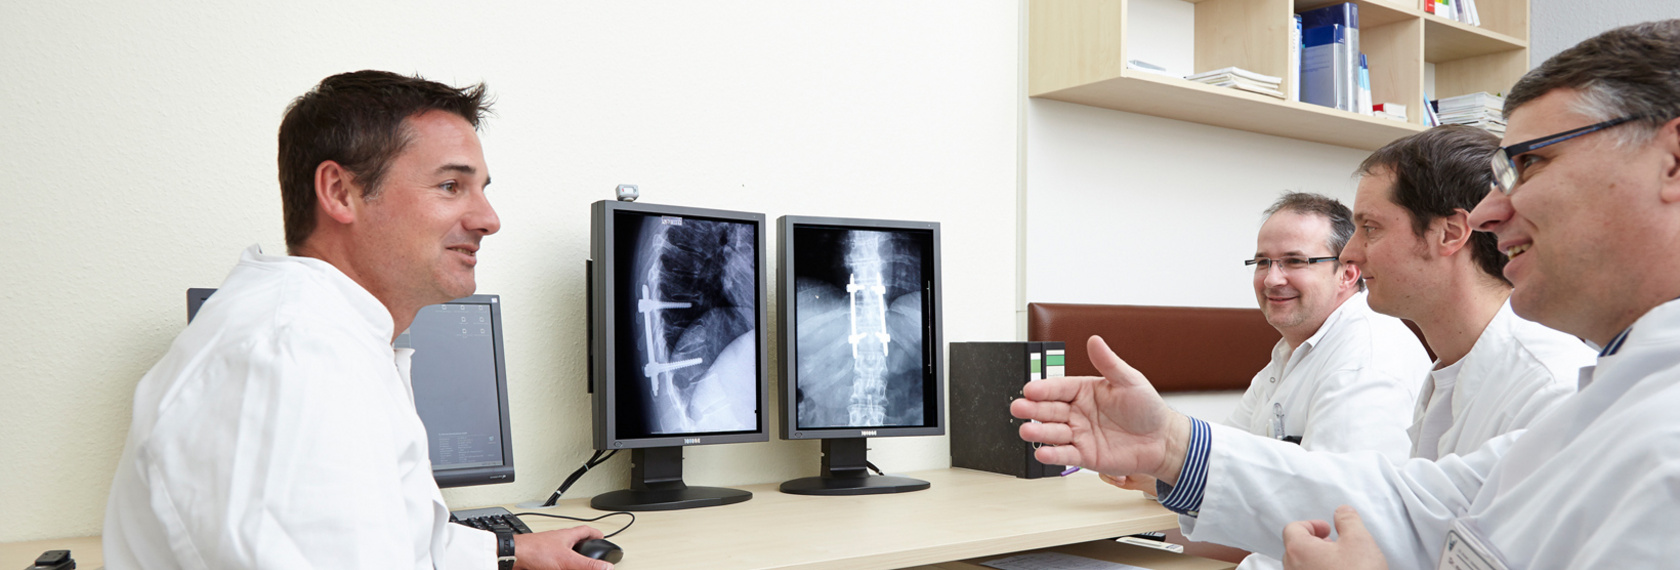 es finden regelmäßig Ärztekonferenzen in der Orthopädie statt